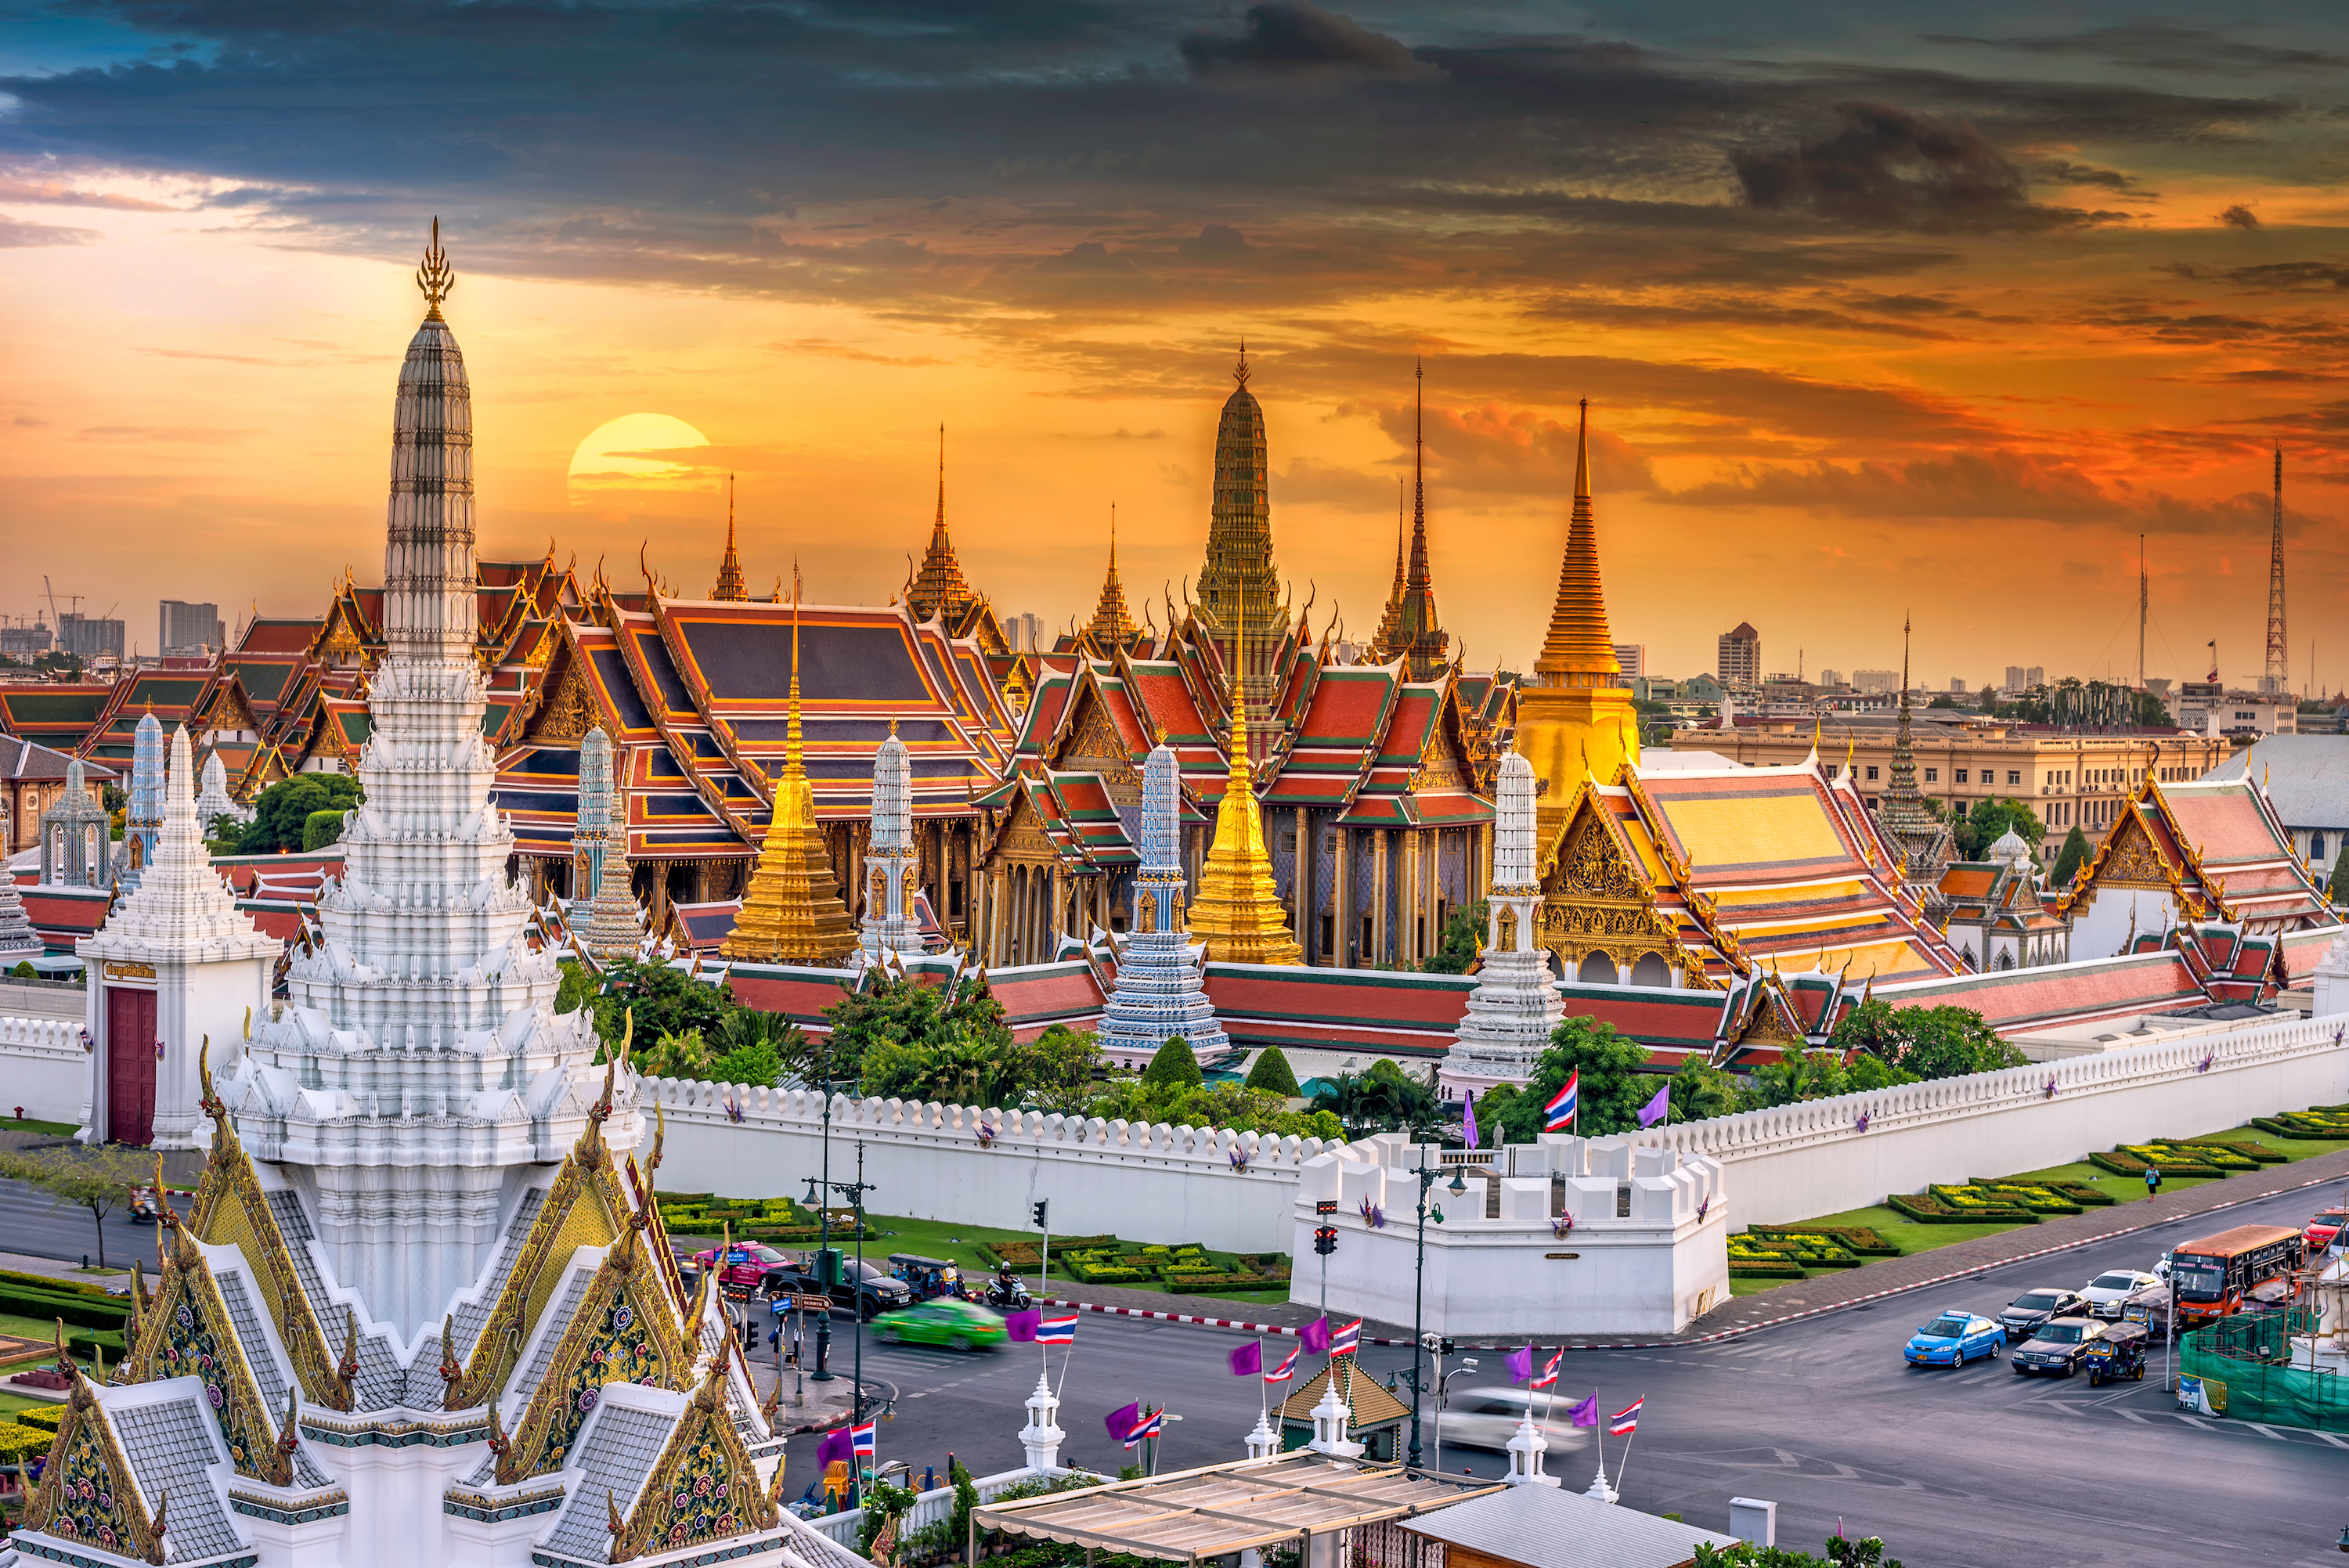 Таиланд города. Королевский дворец в Бангкоке. Большой Королевский дворец и храм изумрудного Будды в Бангкоке. Бангкок столица Таиланда. Гранд Палас Бангкок.